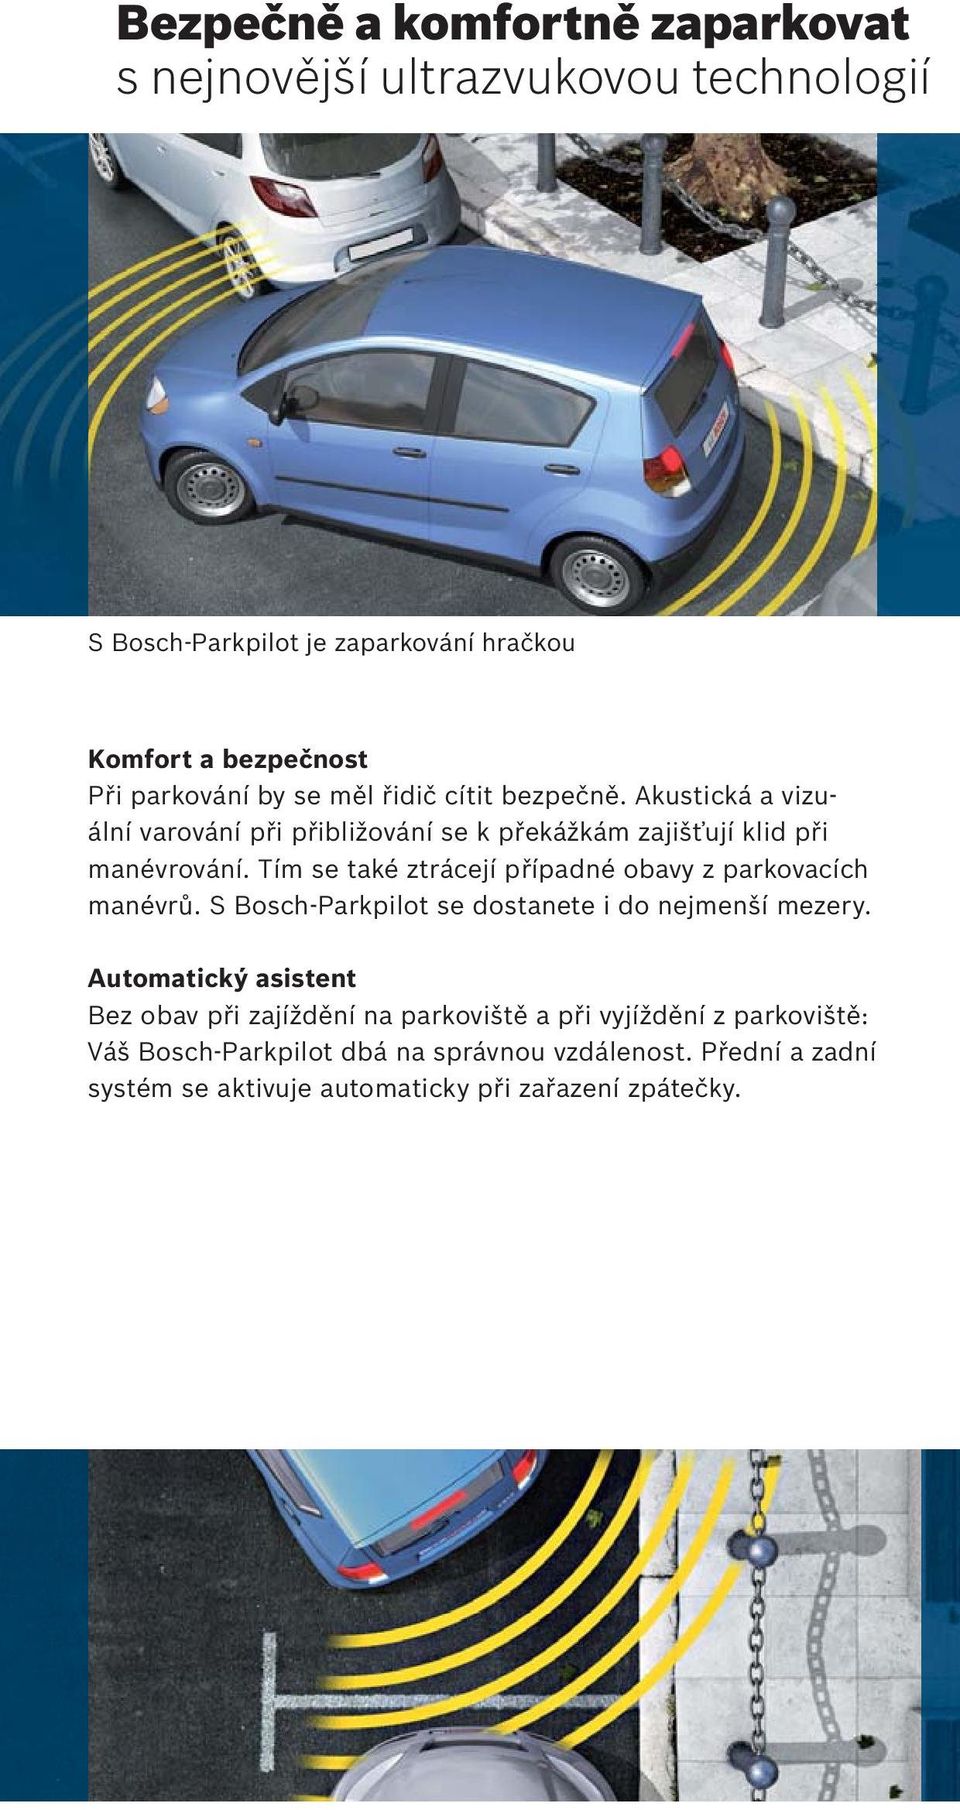 Tím se také ztrácejí případné obavy z parkovacích manévrů. S Bosch-Parkpilot se dostanete i do nejmenší mezery.